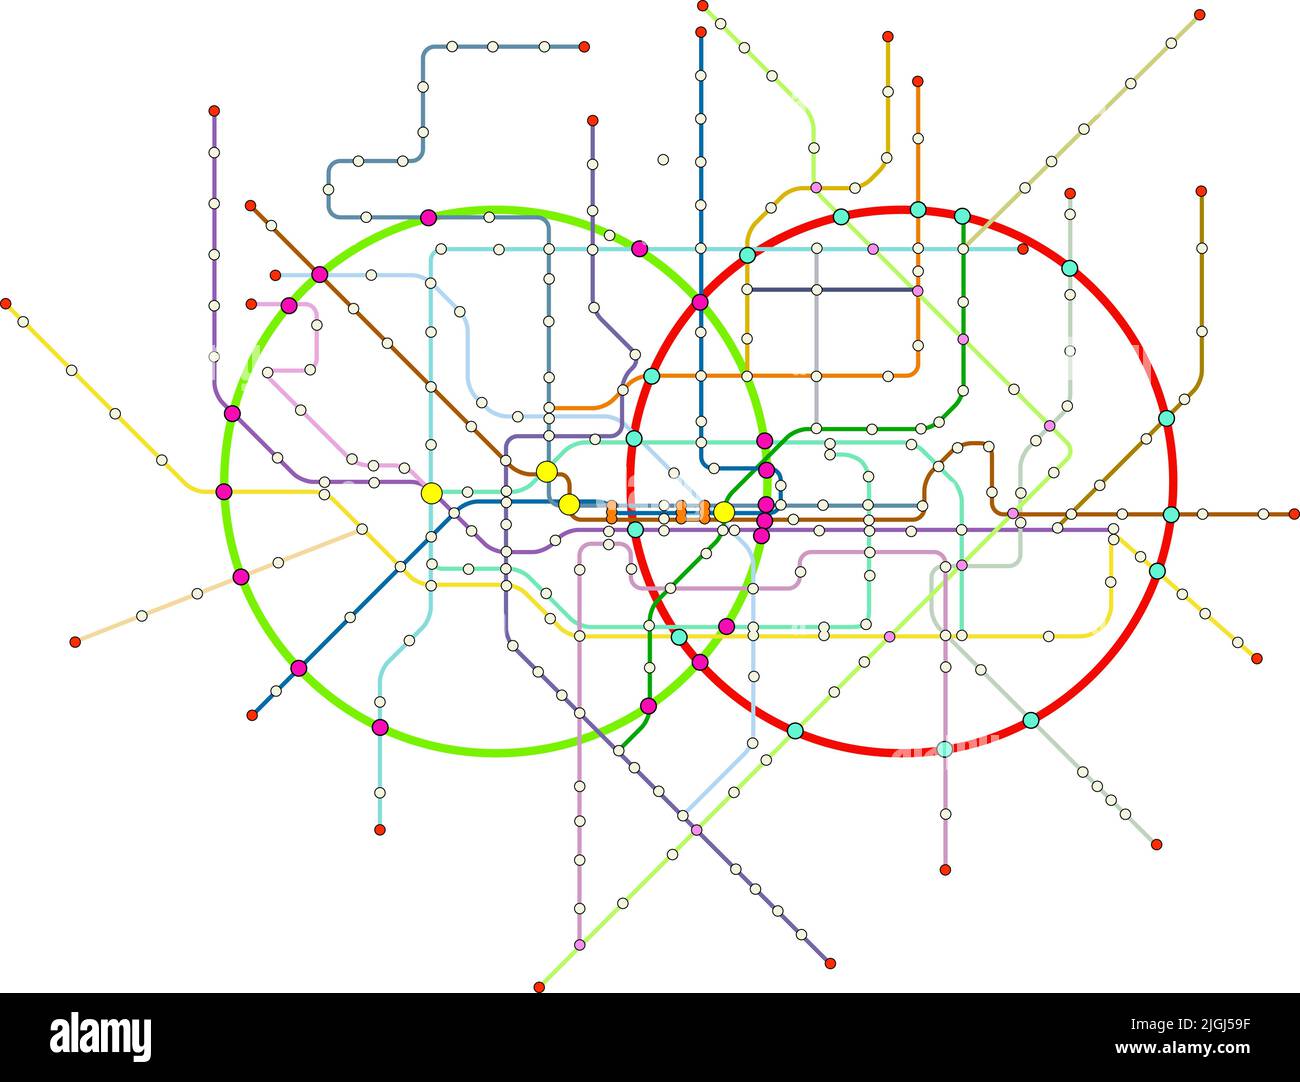 Fiktiver U-Bahnplan, Karte für öffentliche Verkehrsmittel, freier Kopierplatz Stock Vektor